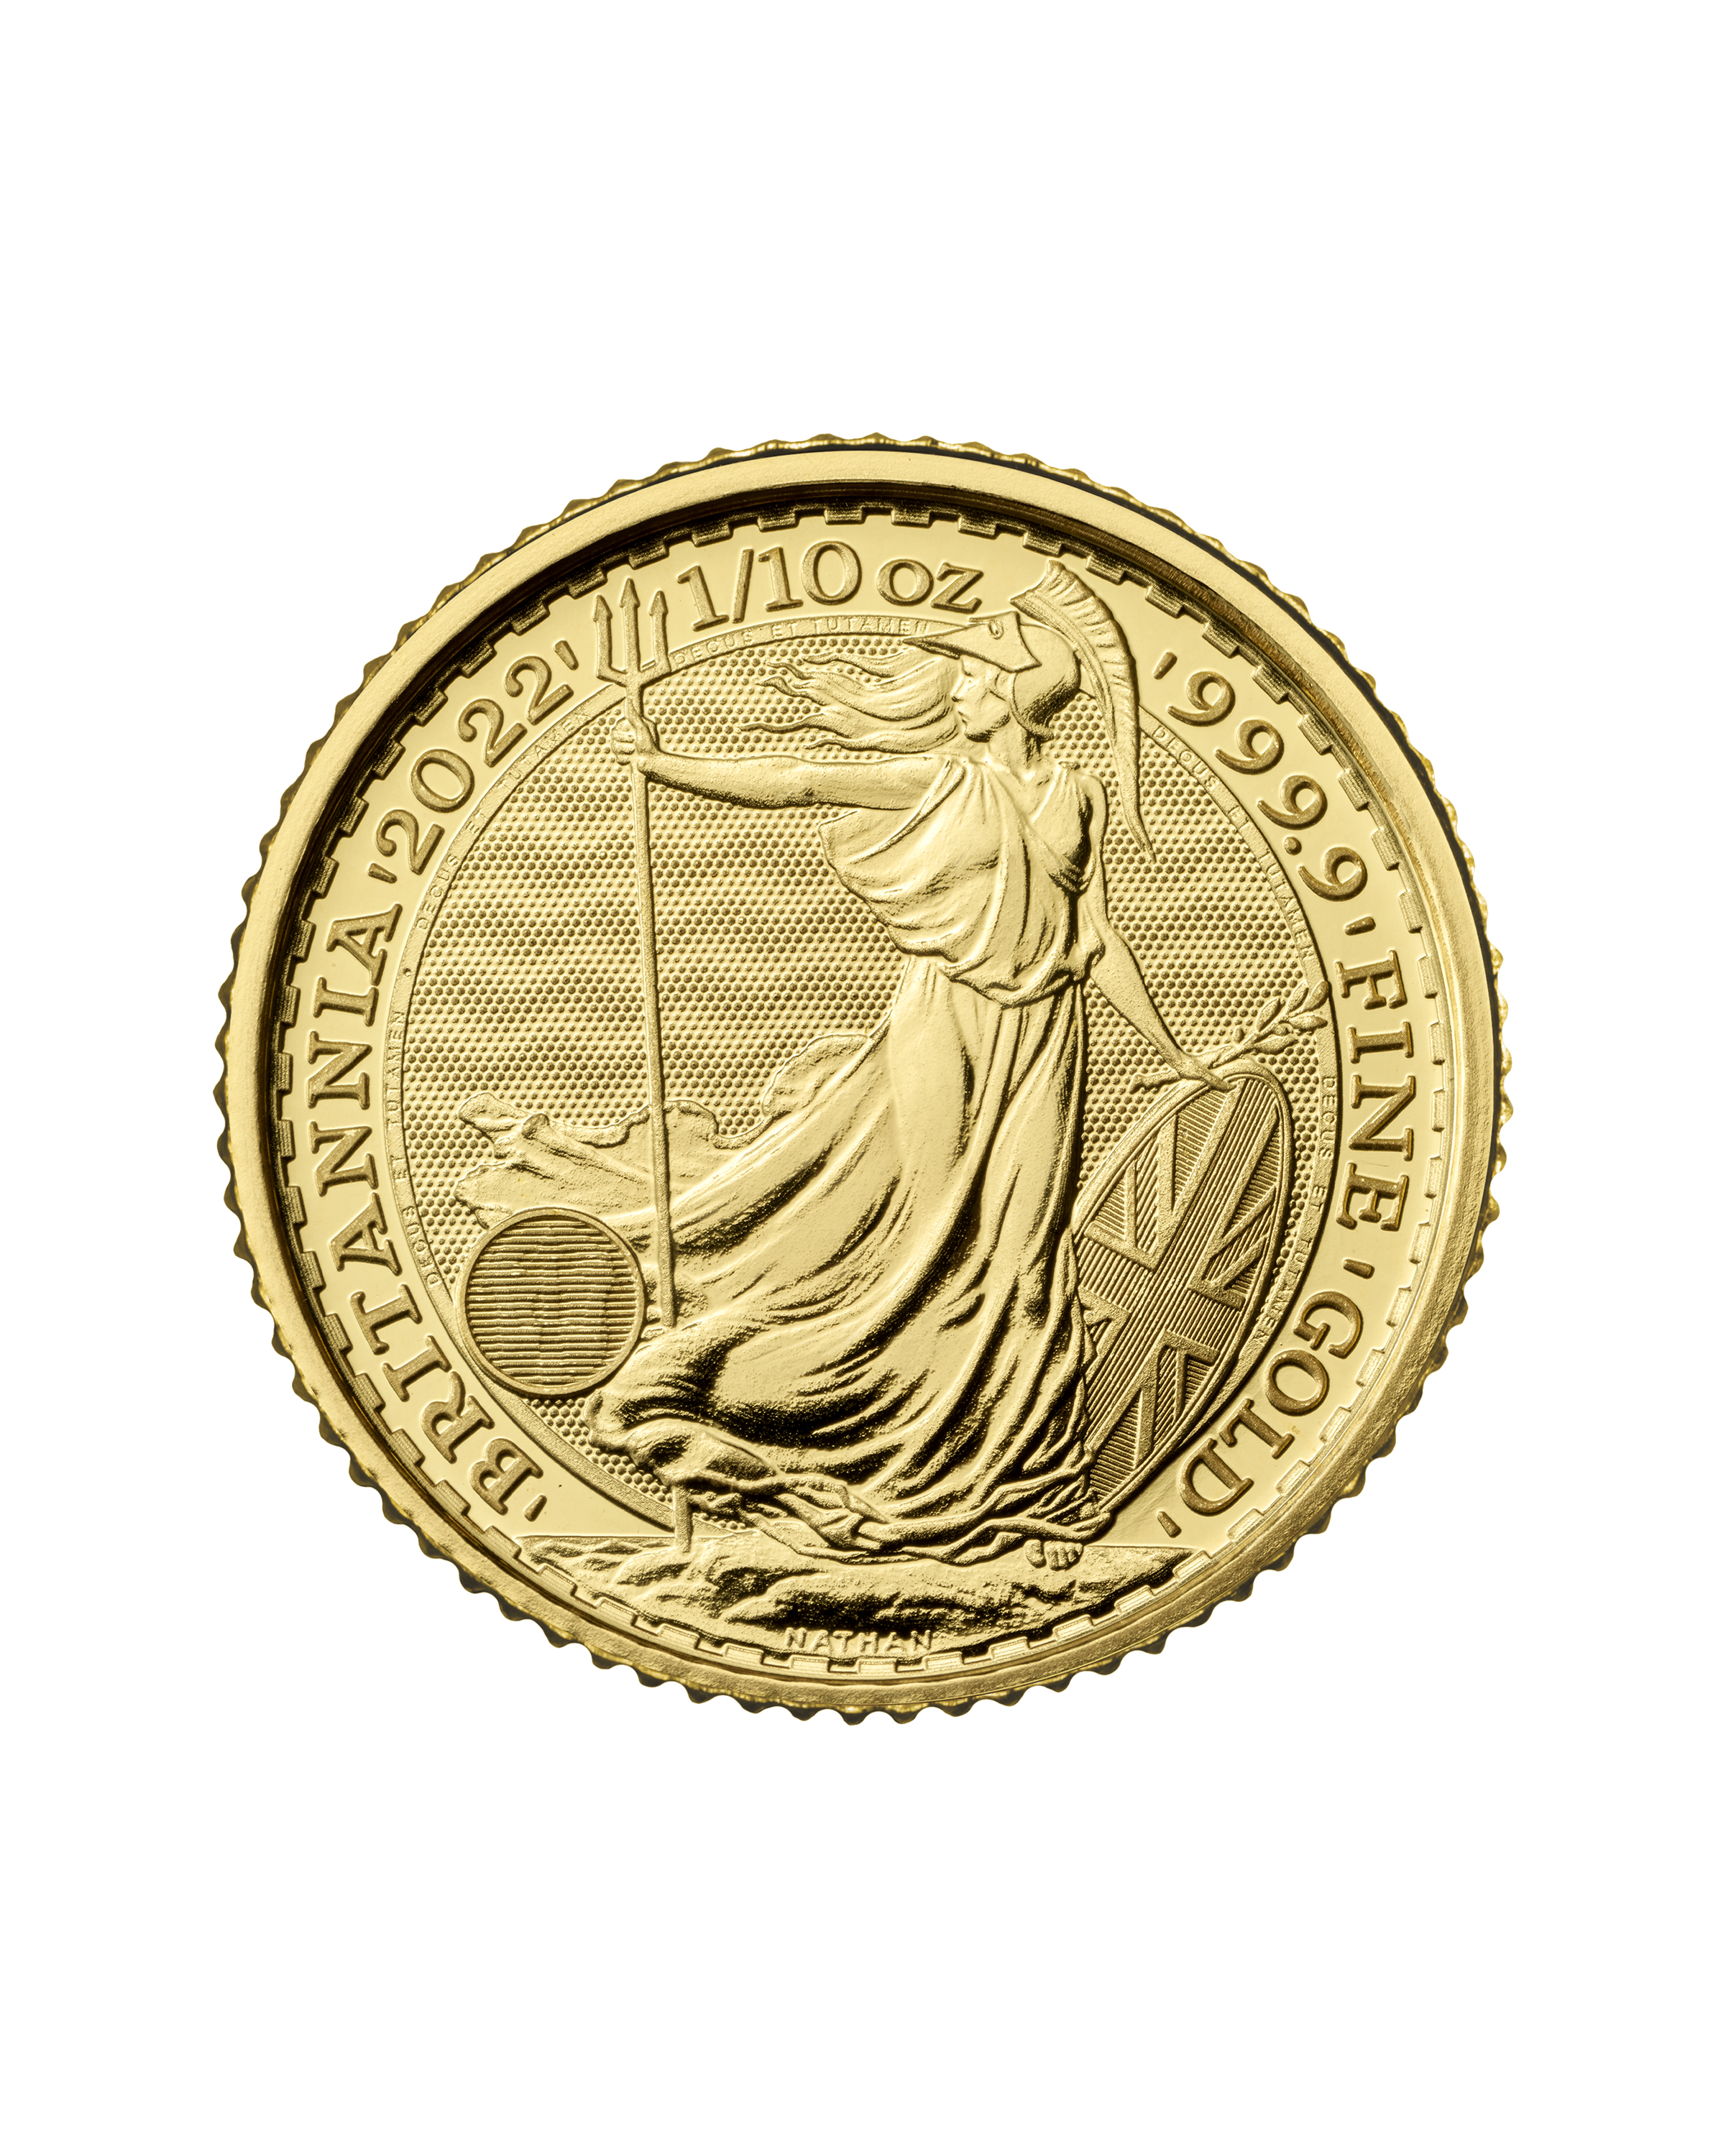 2022 Britannia One Tenth Ounce Gold Coin